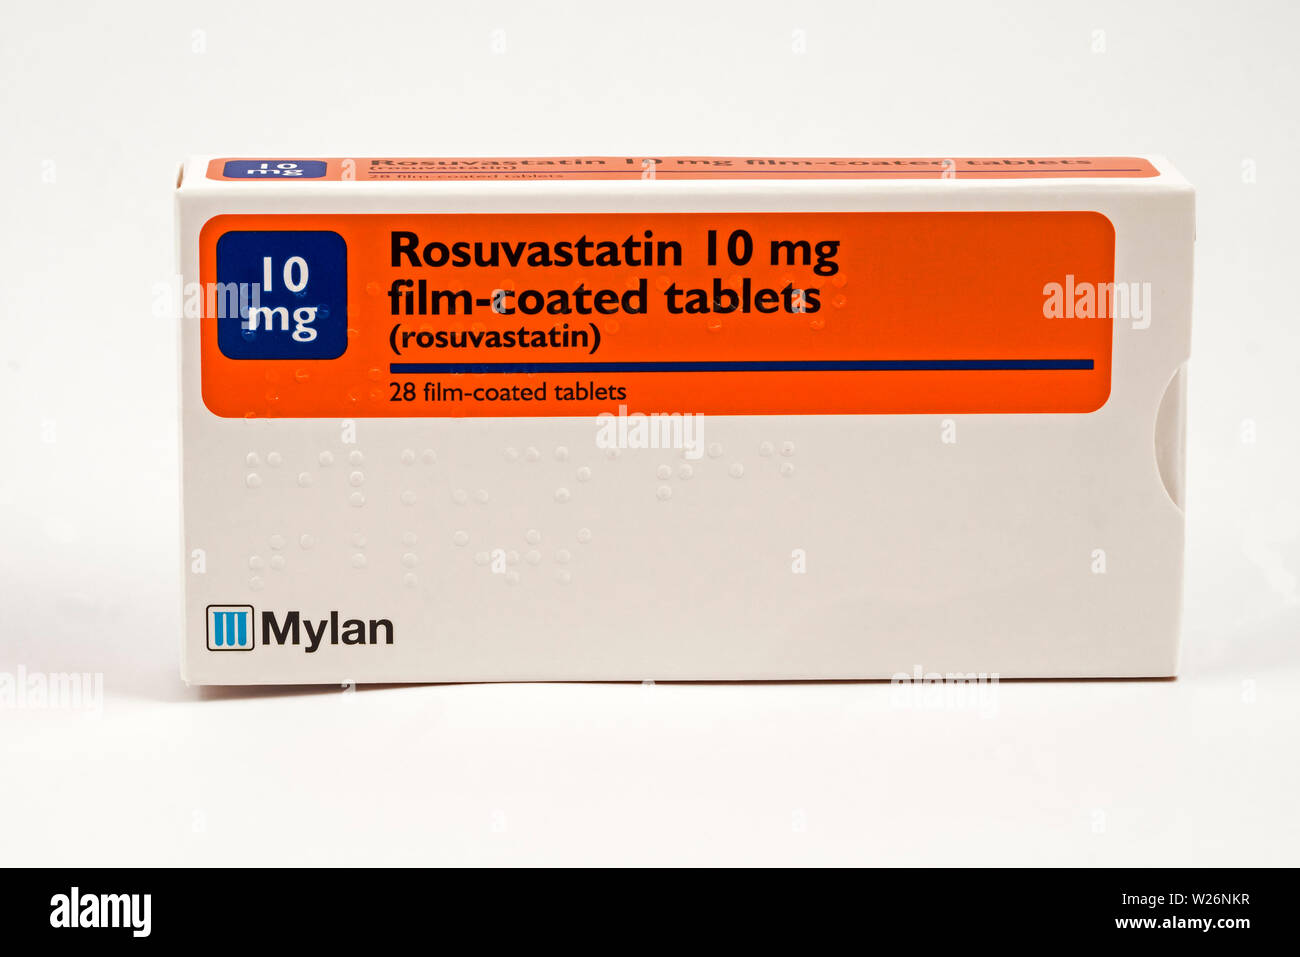 La rosuvastatine, une statine, un médicament pour abaisser le cholestérol. Également commercialisé sous le nom de Crestor. Banque D'Images